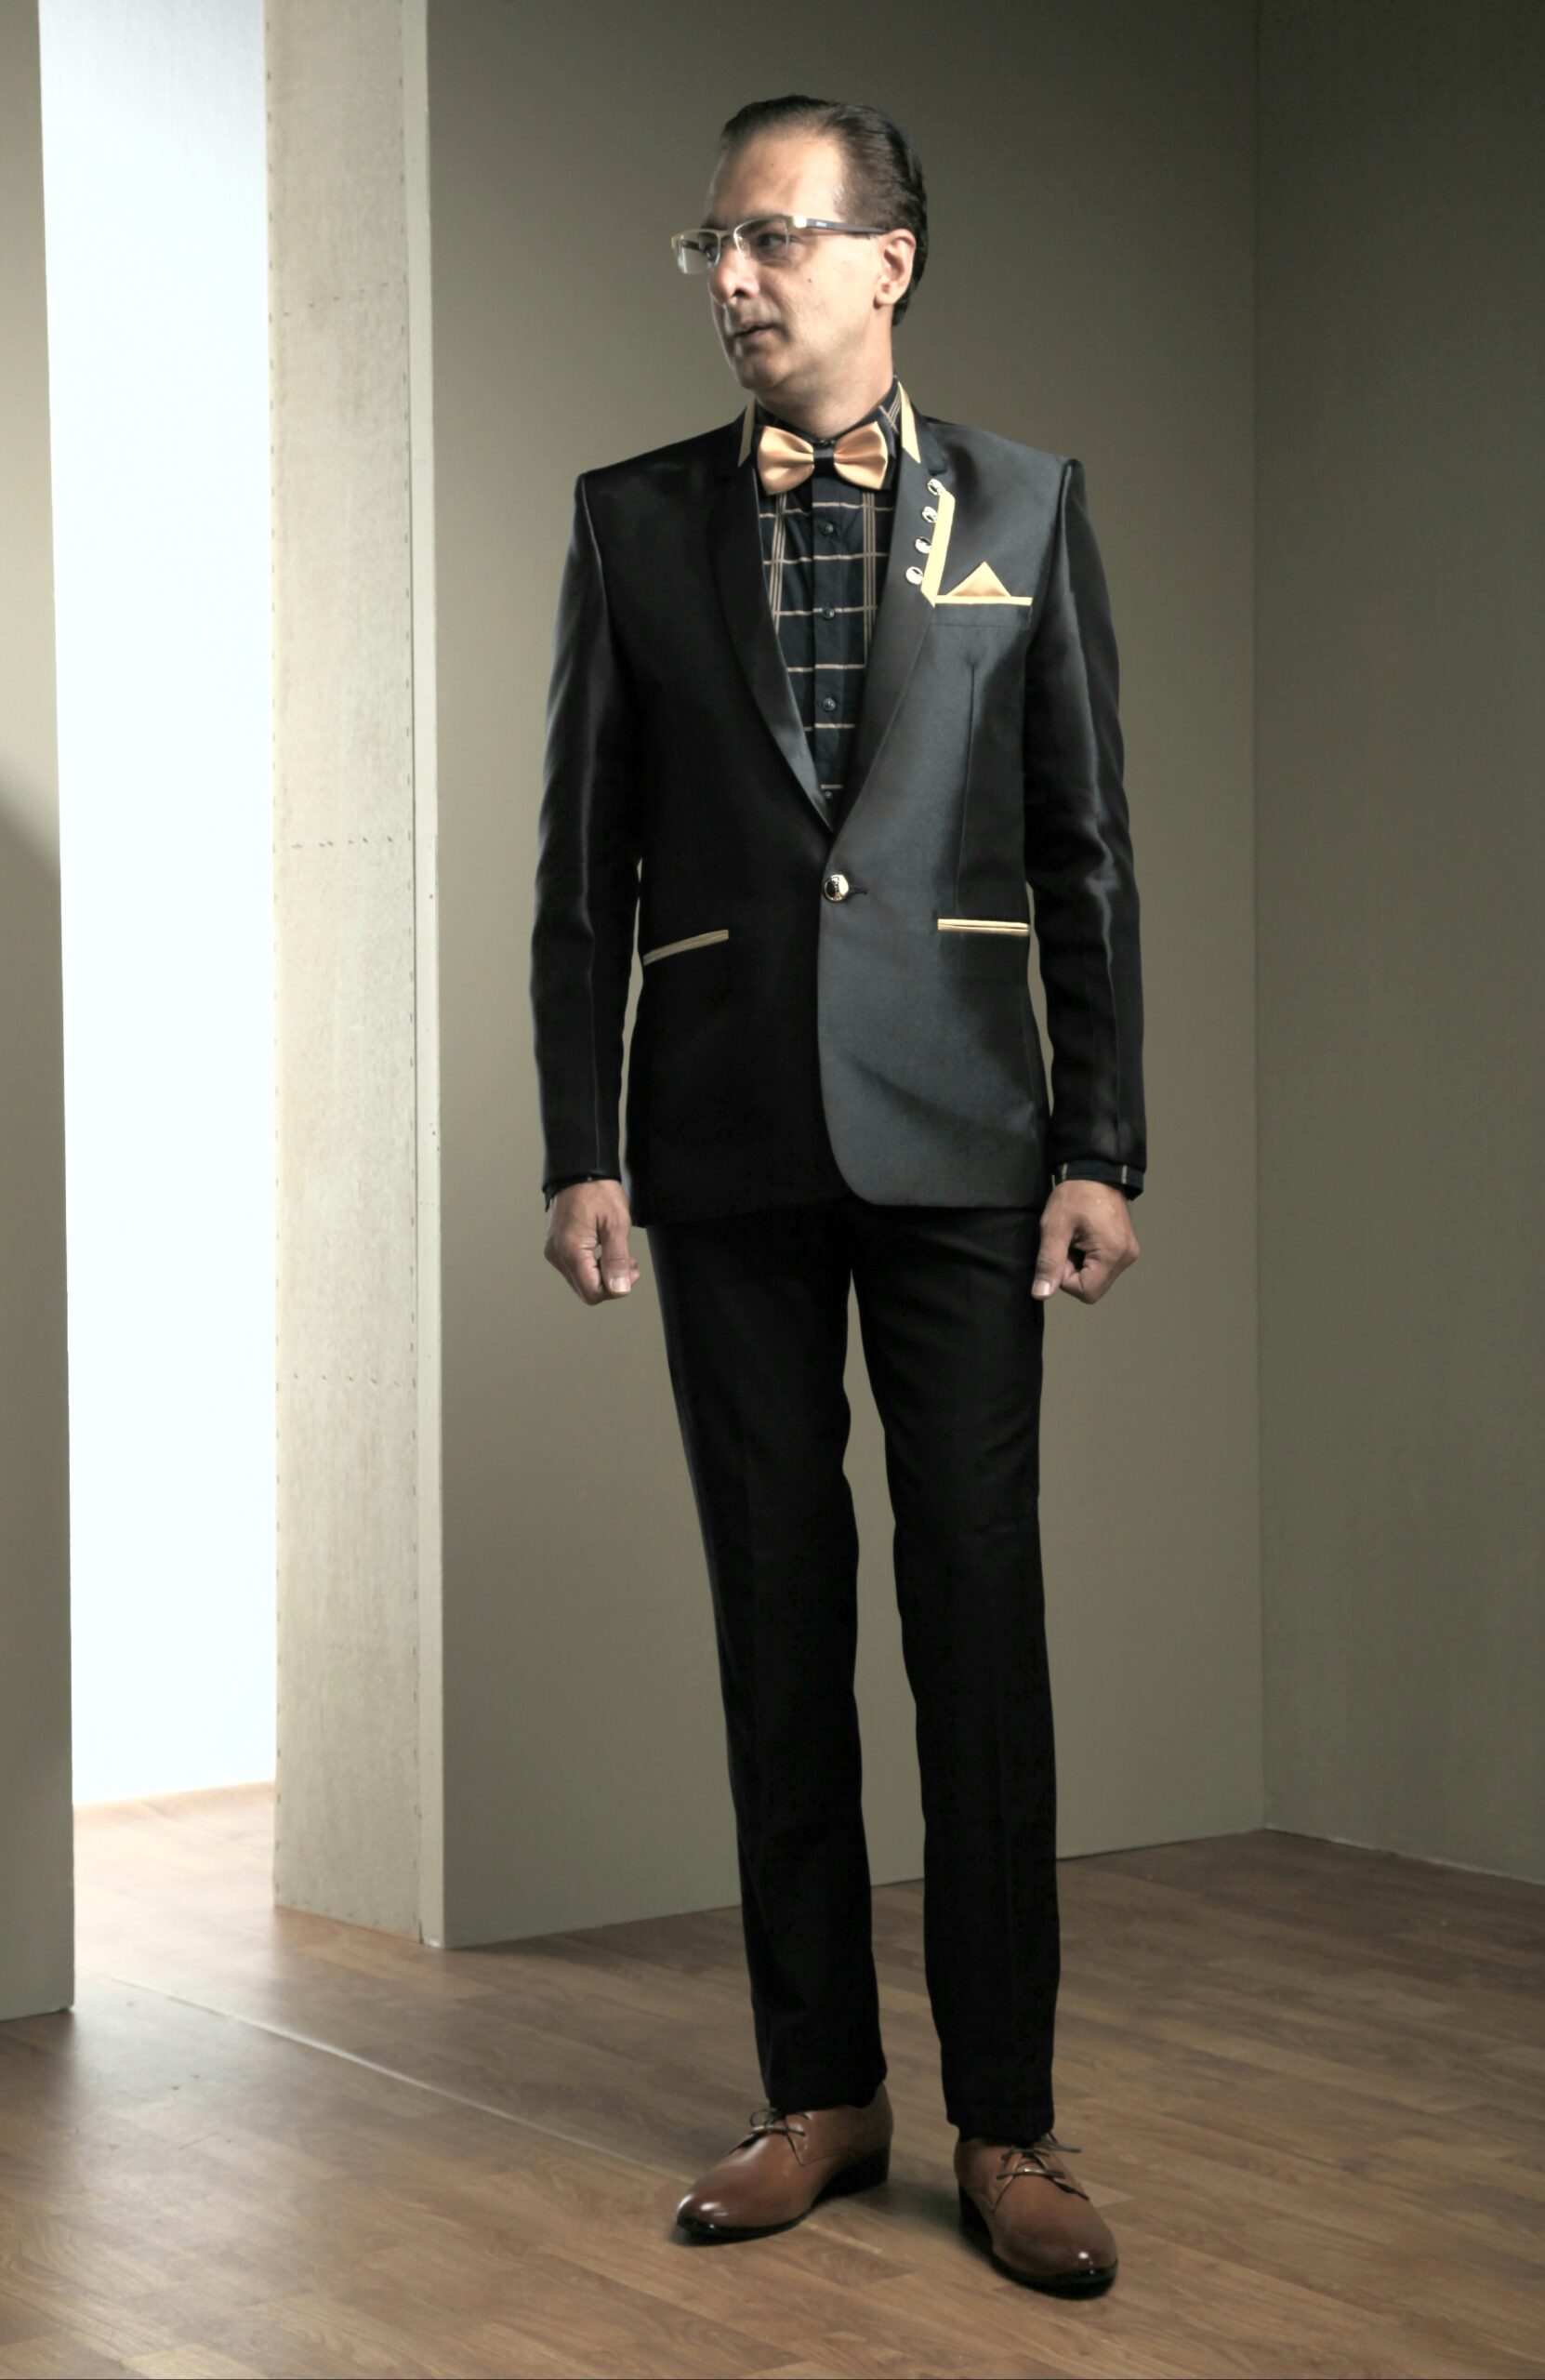 MST-5057-02-rent_rental_hire_tuxedo_suit_black_tie_suit_designer_suits_shop_tailor_tailors_singapore_wedding